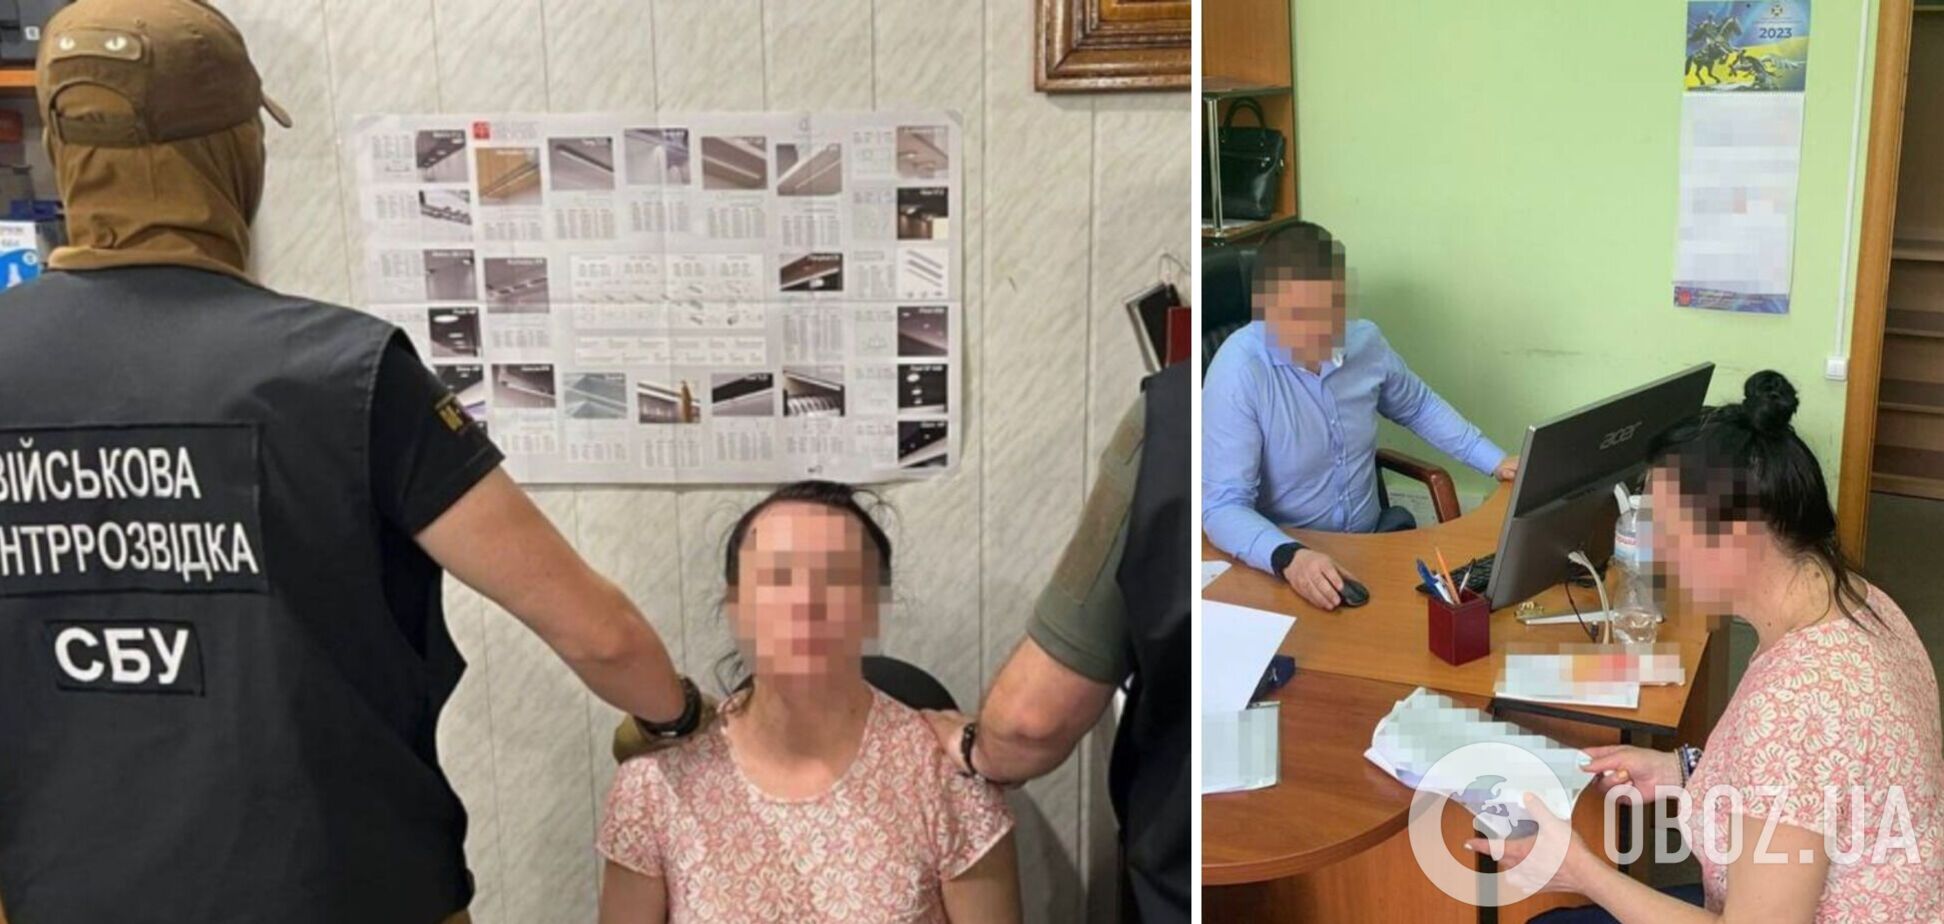 Корректировала огонь по Кривому Рогу: агент ФСБ в Украине получила 15 лет тюрьмы. Фото